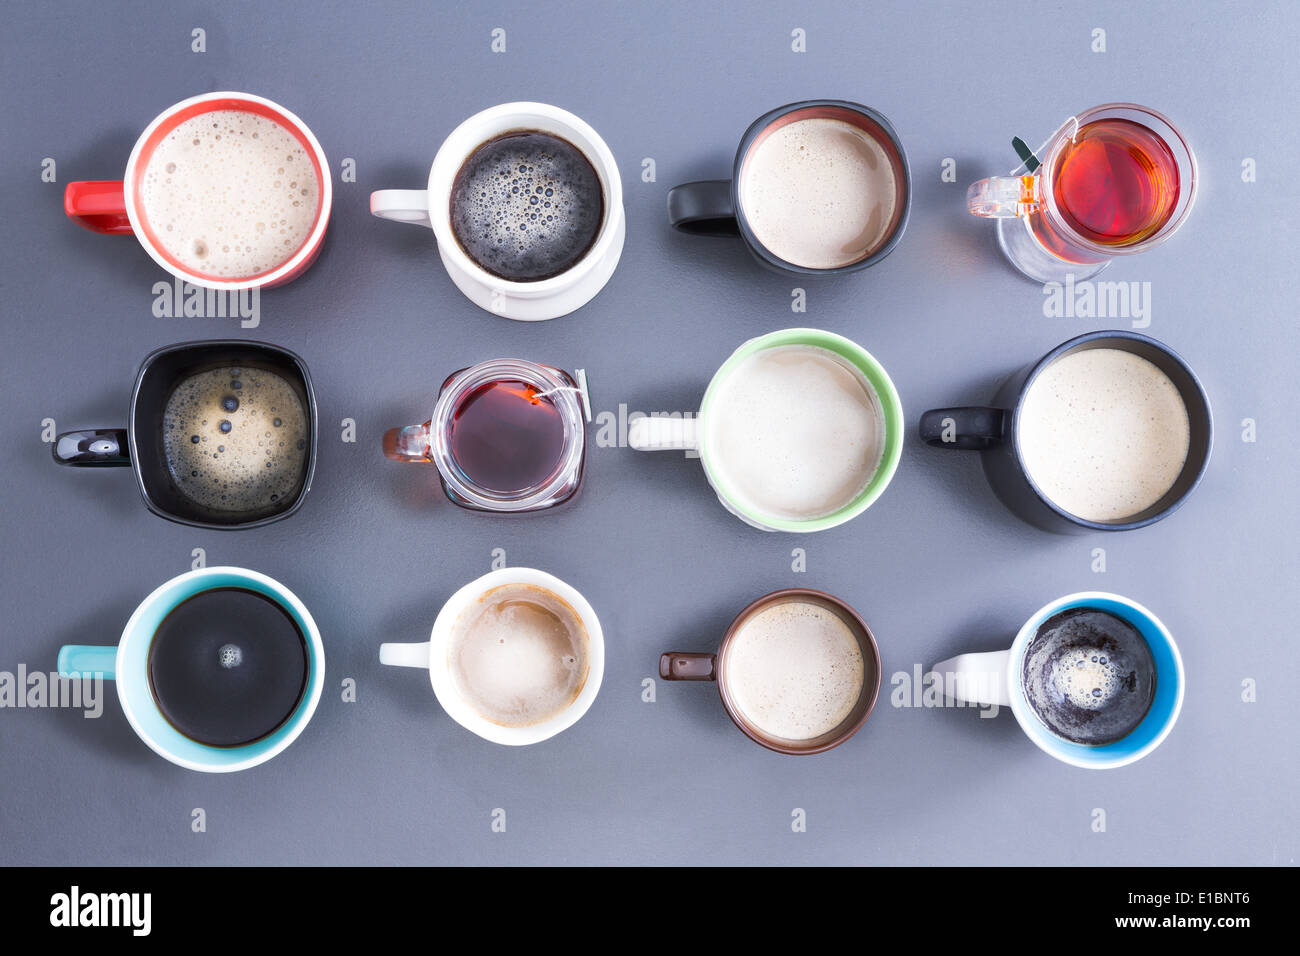 Conceptual image représentant le temps pour votre dose quotidienne de caféine avec une vue de dessus d'un arrangement soigné de douze diffèrent Banque D'Images